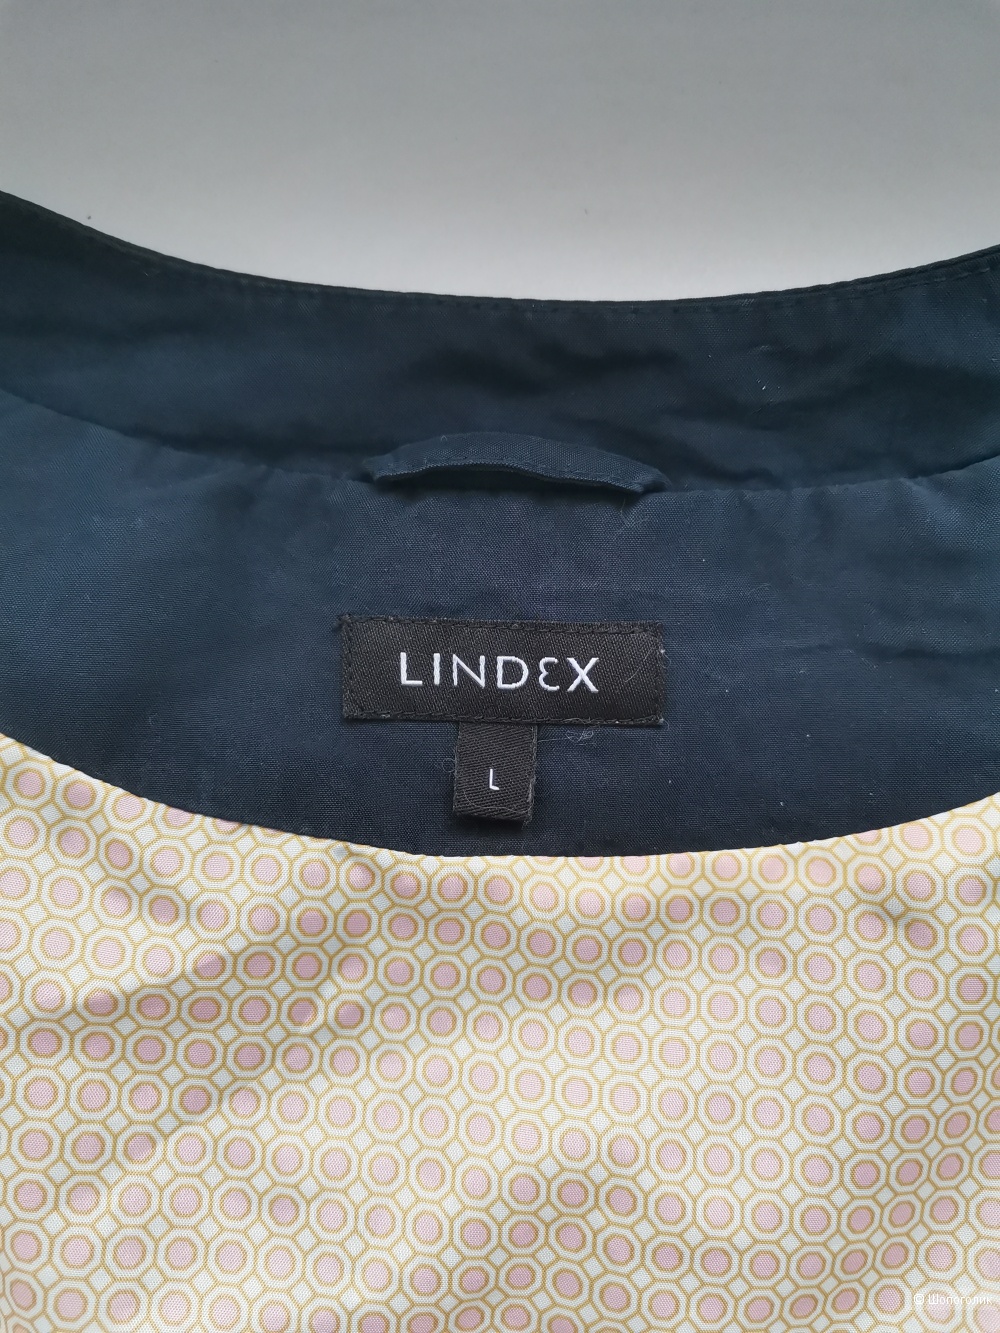 Куртка - бомбер Lindex 44-50